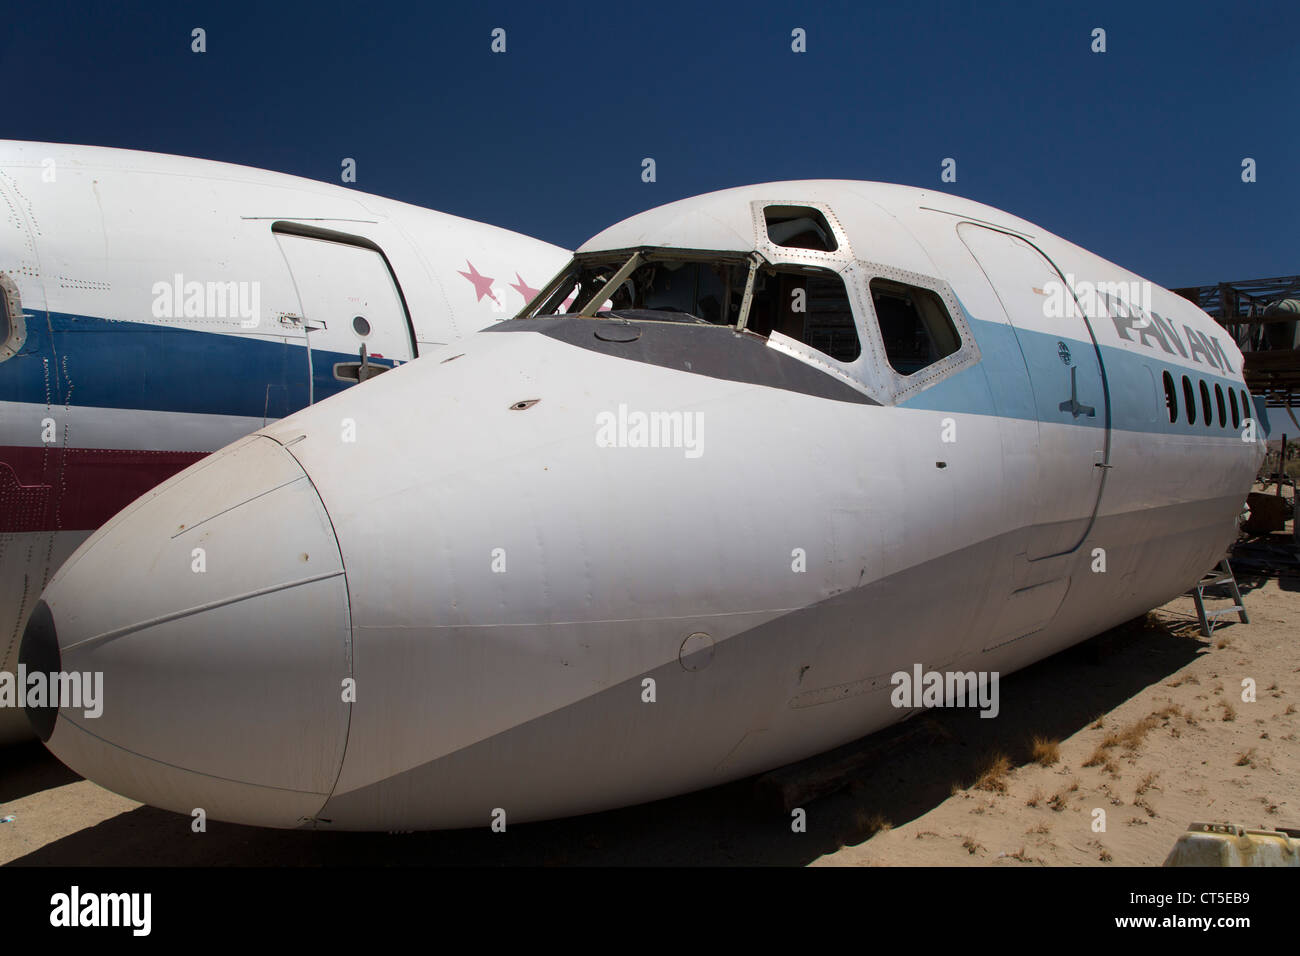 El Mirage, Kalifornien - ein Schrottplatz für Flugzeugteile. Stockfoto